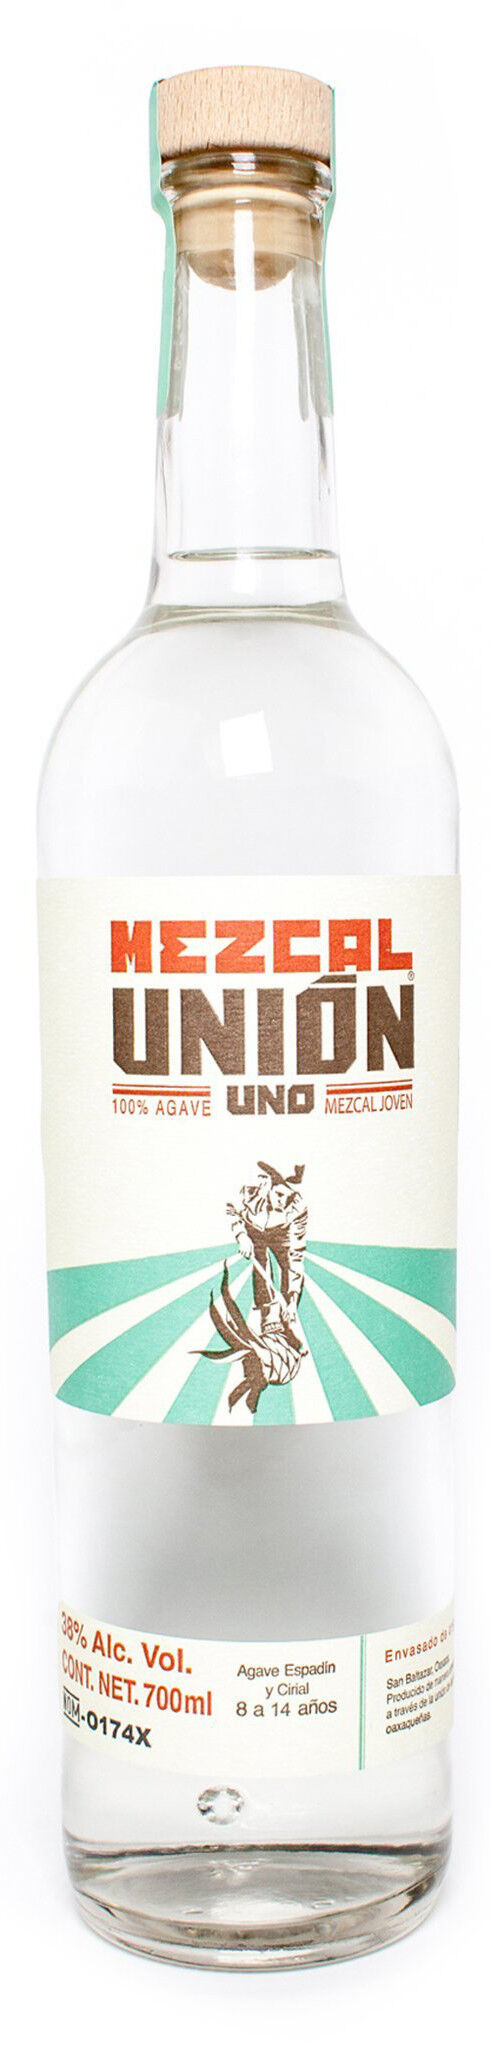 Mezcal Union Uno 700ml